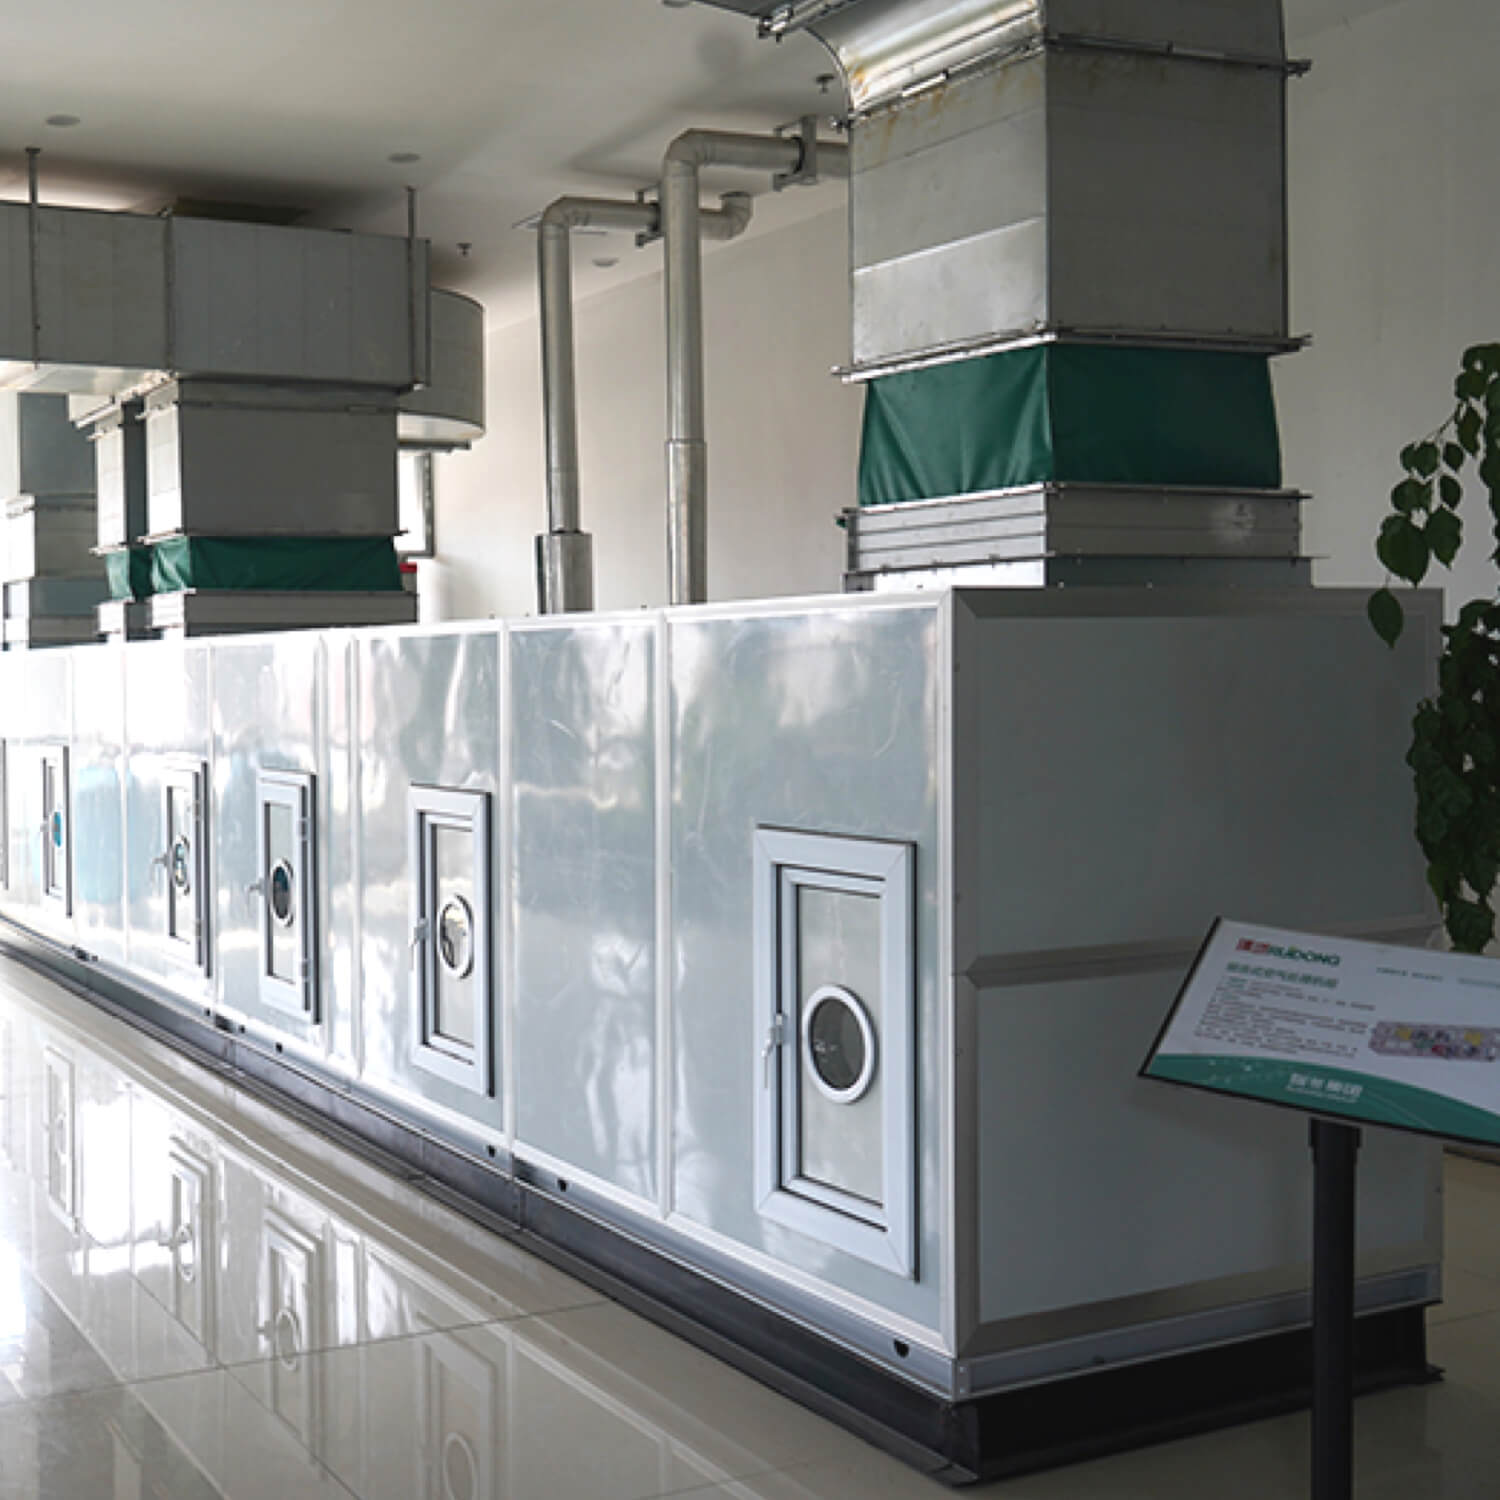 Fabricación profesional de unidades de tratamiento de aire combinadas industriales.